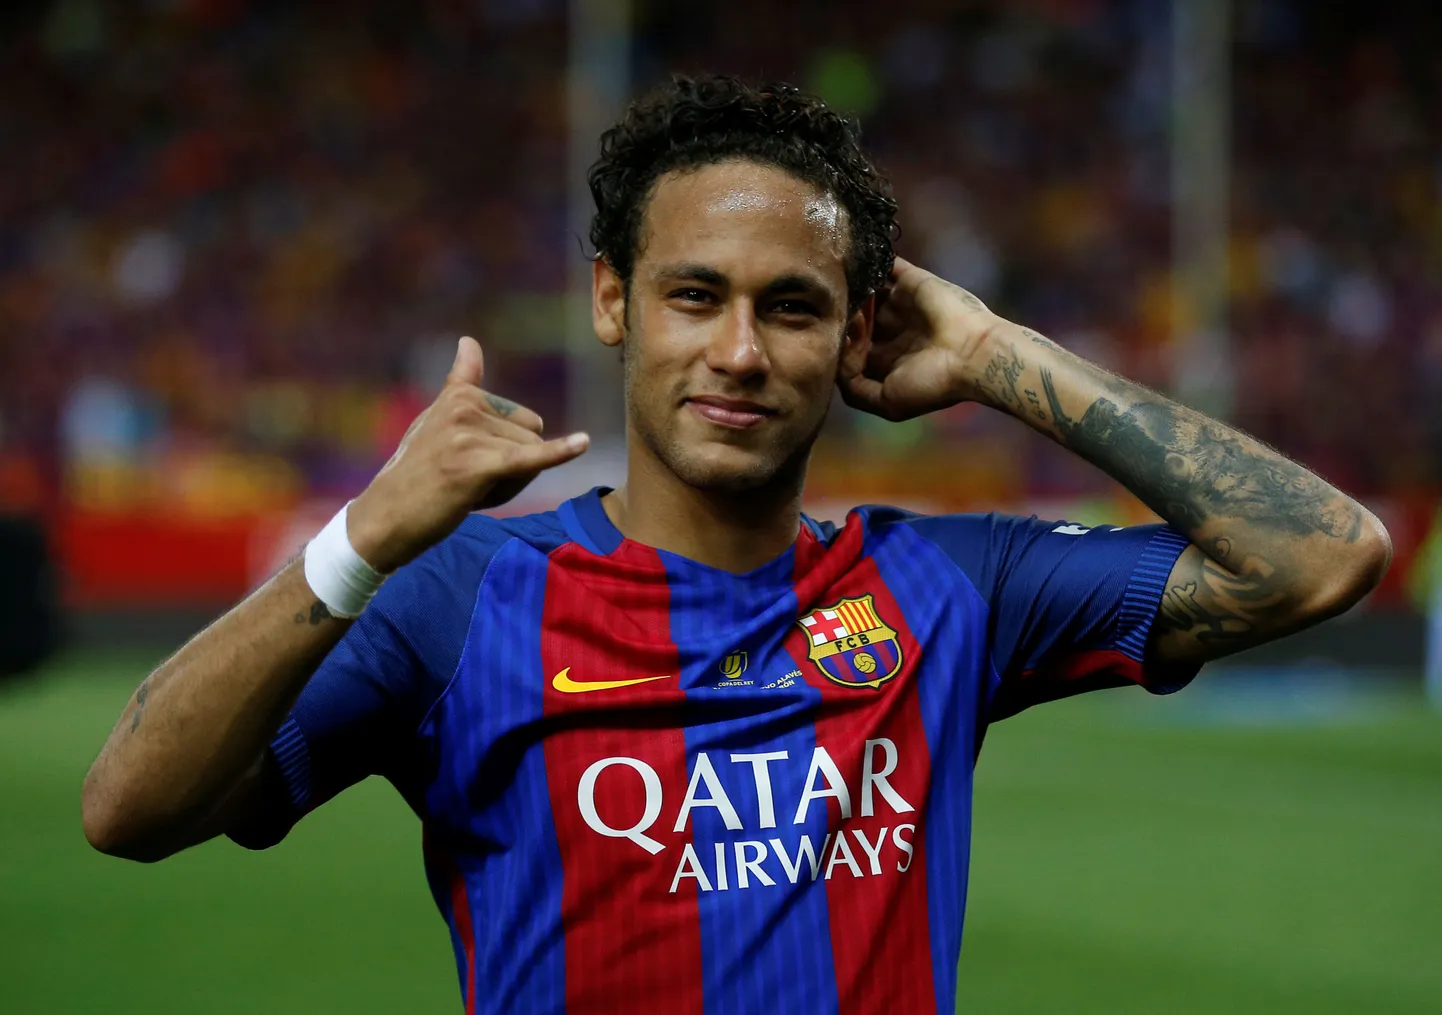 Neymar oli 2013. aastal läbinud Madridi Realis arstliku läbivaatuse, kuid liitus lõpuks siiski Hispaania pealinnaklubi igipõlise rivaali FC Barcelonaga.